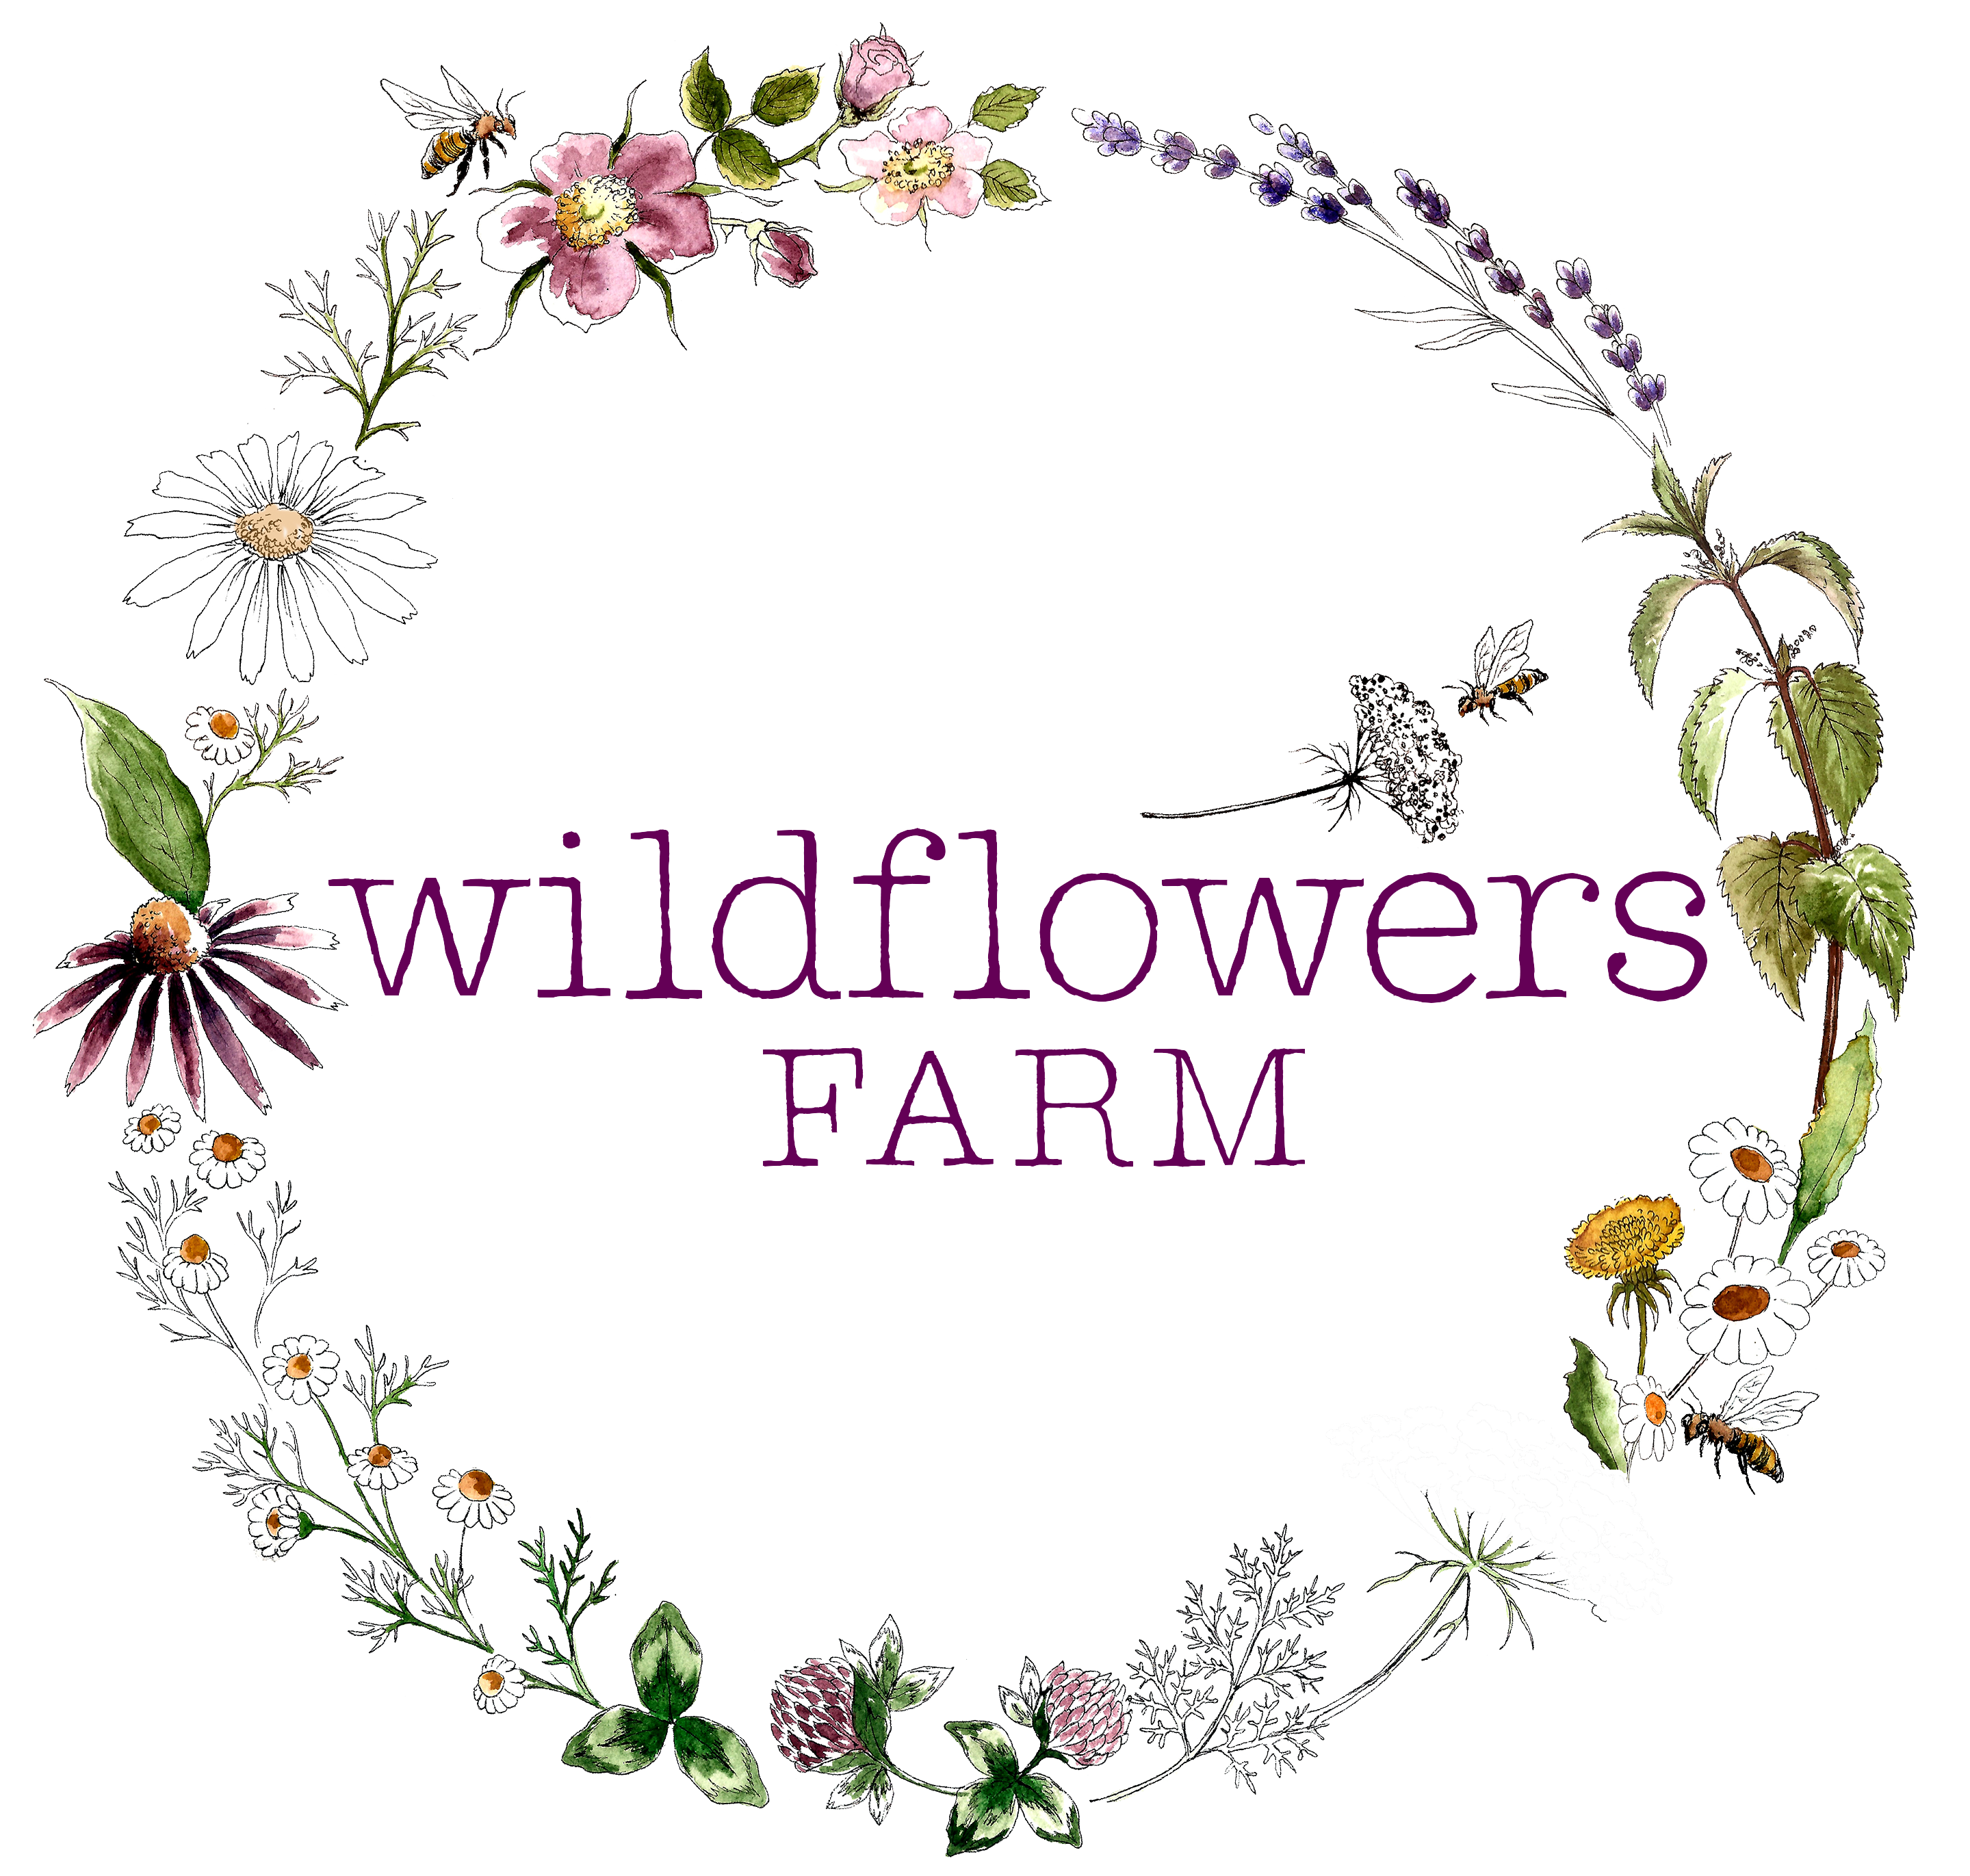 Wildflowers Farm